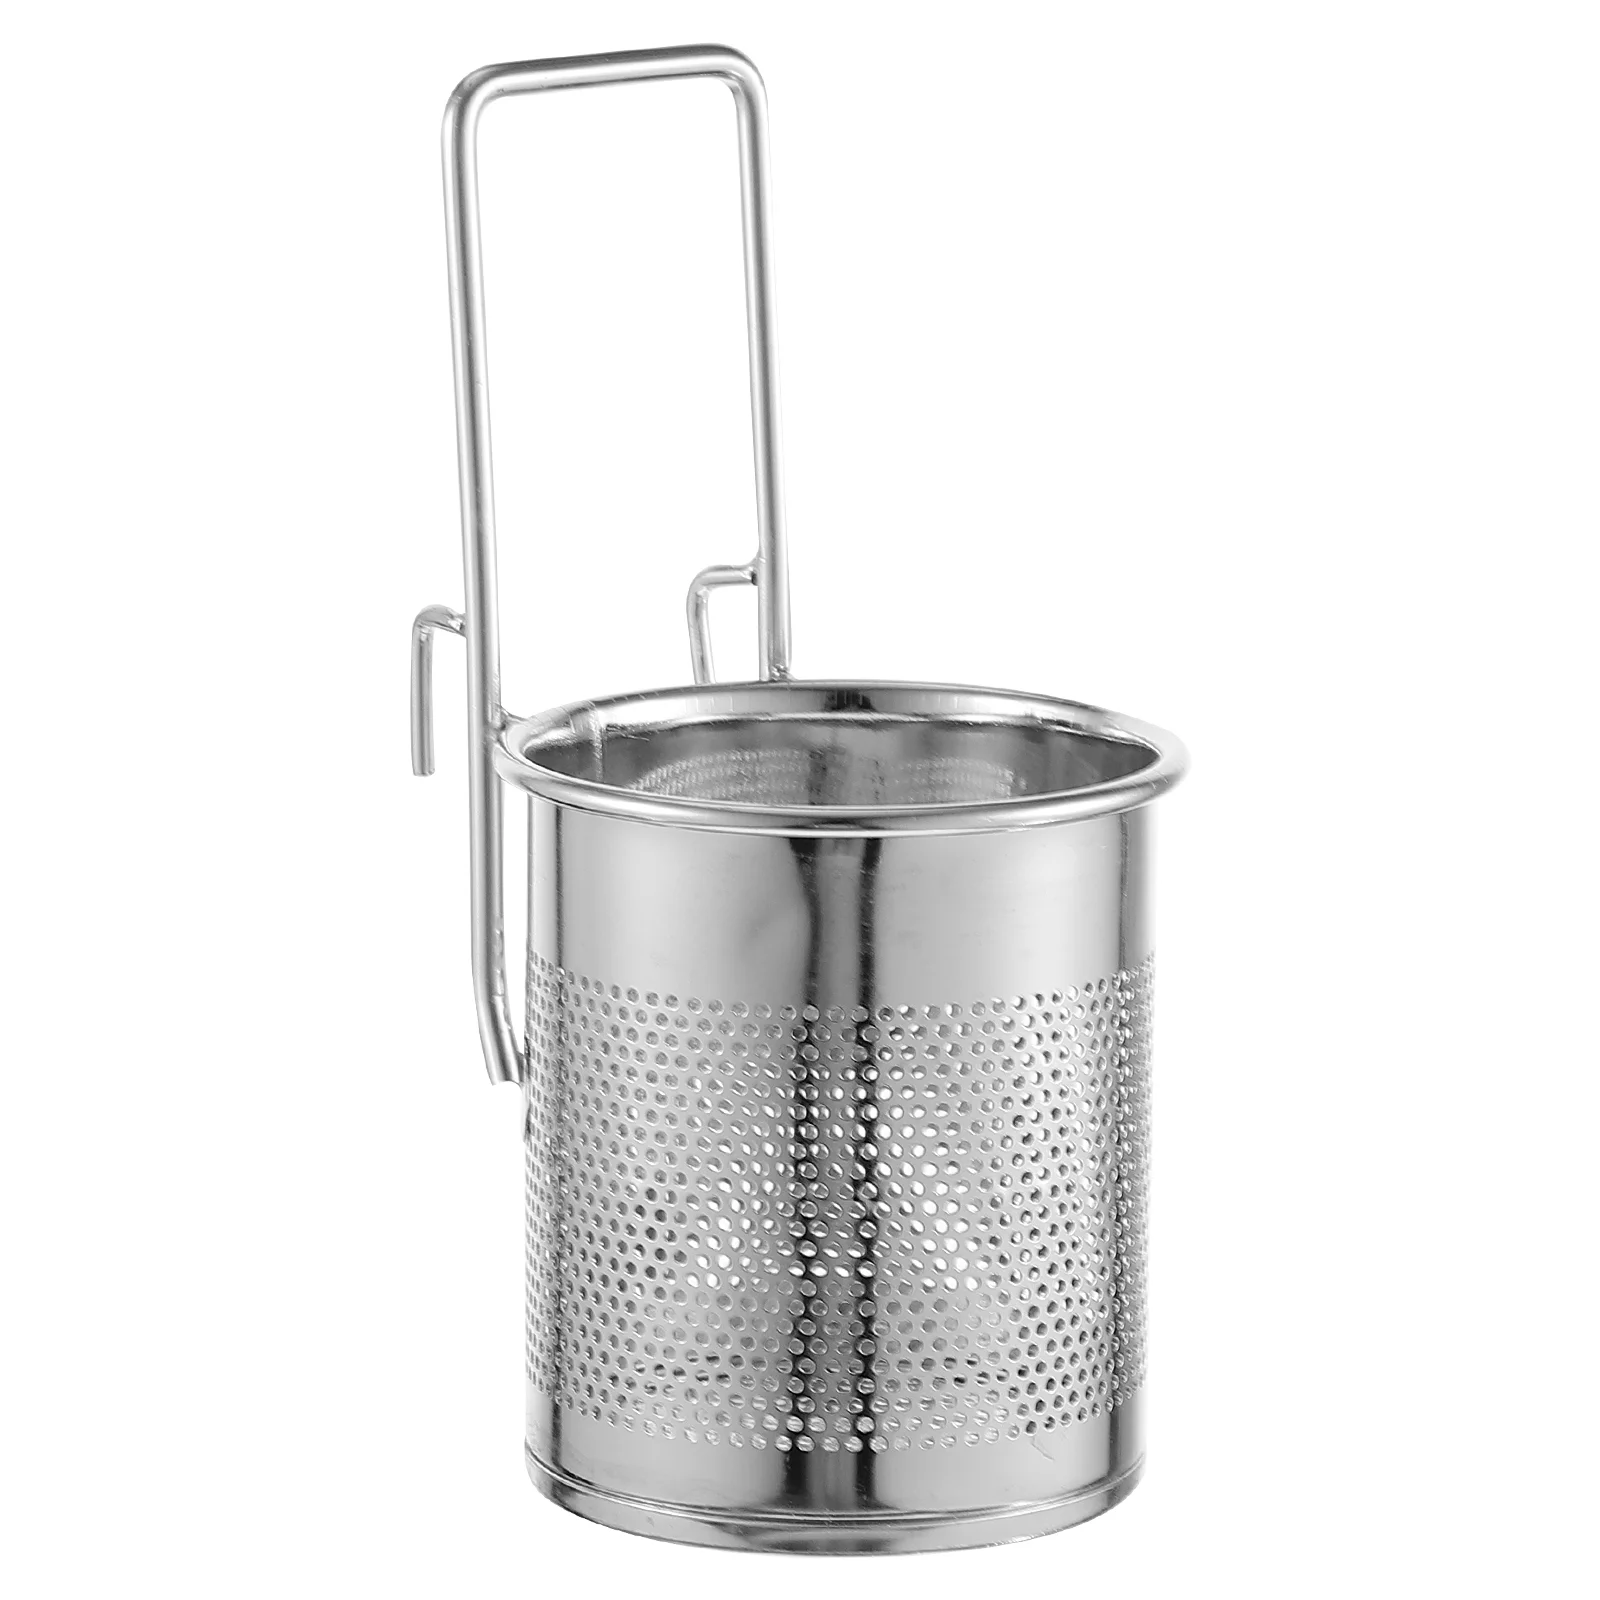 

Hot Pot Strainer Basket Durable Mesh Colander Hanging Filter Basket Food Skimmer For Pasta Dumpling Noodle Kitchen Cooking Tool